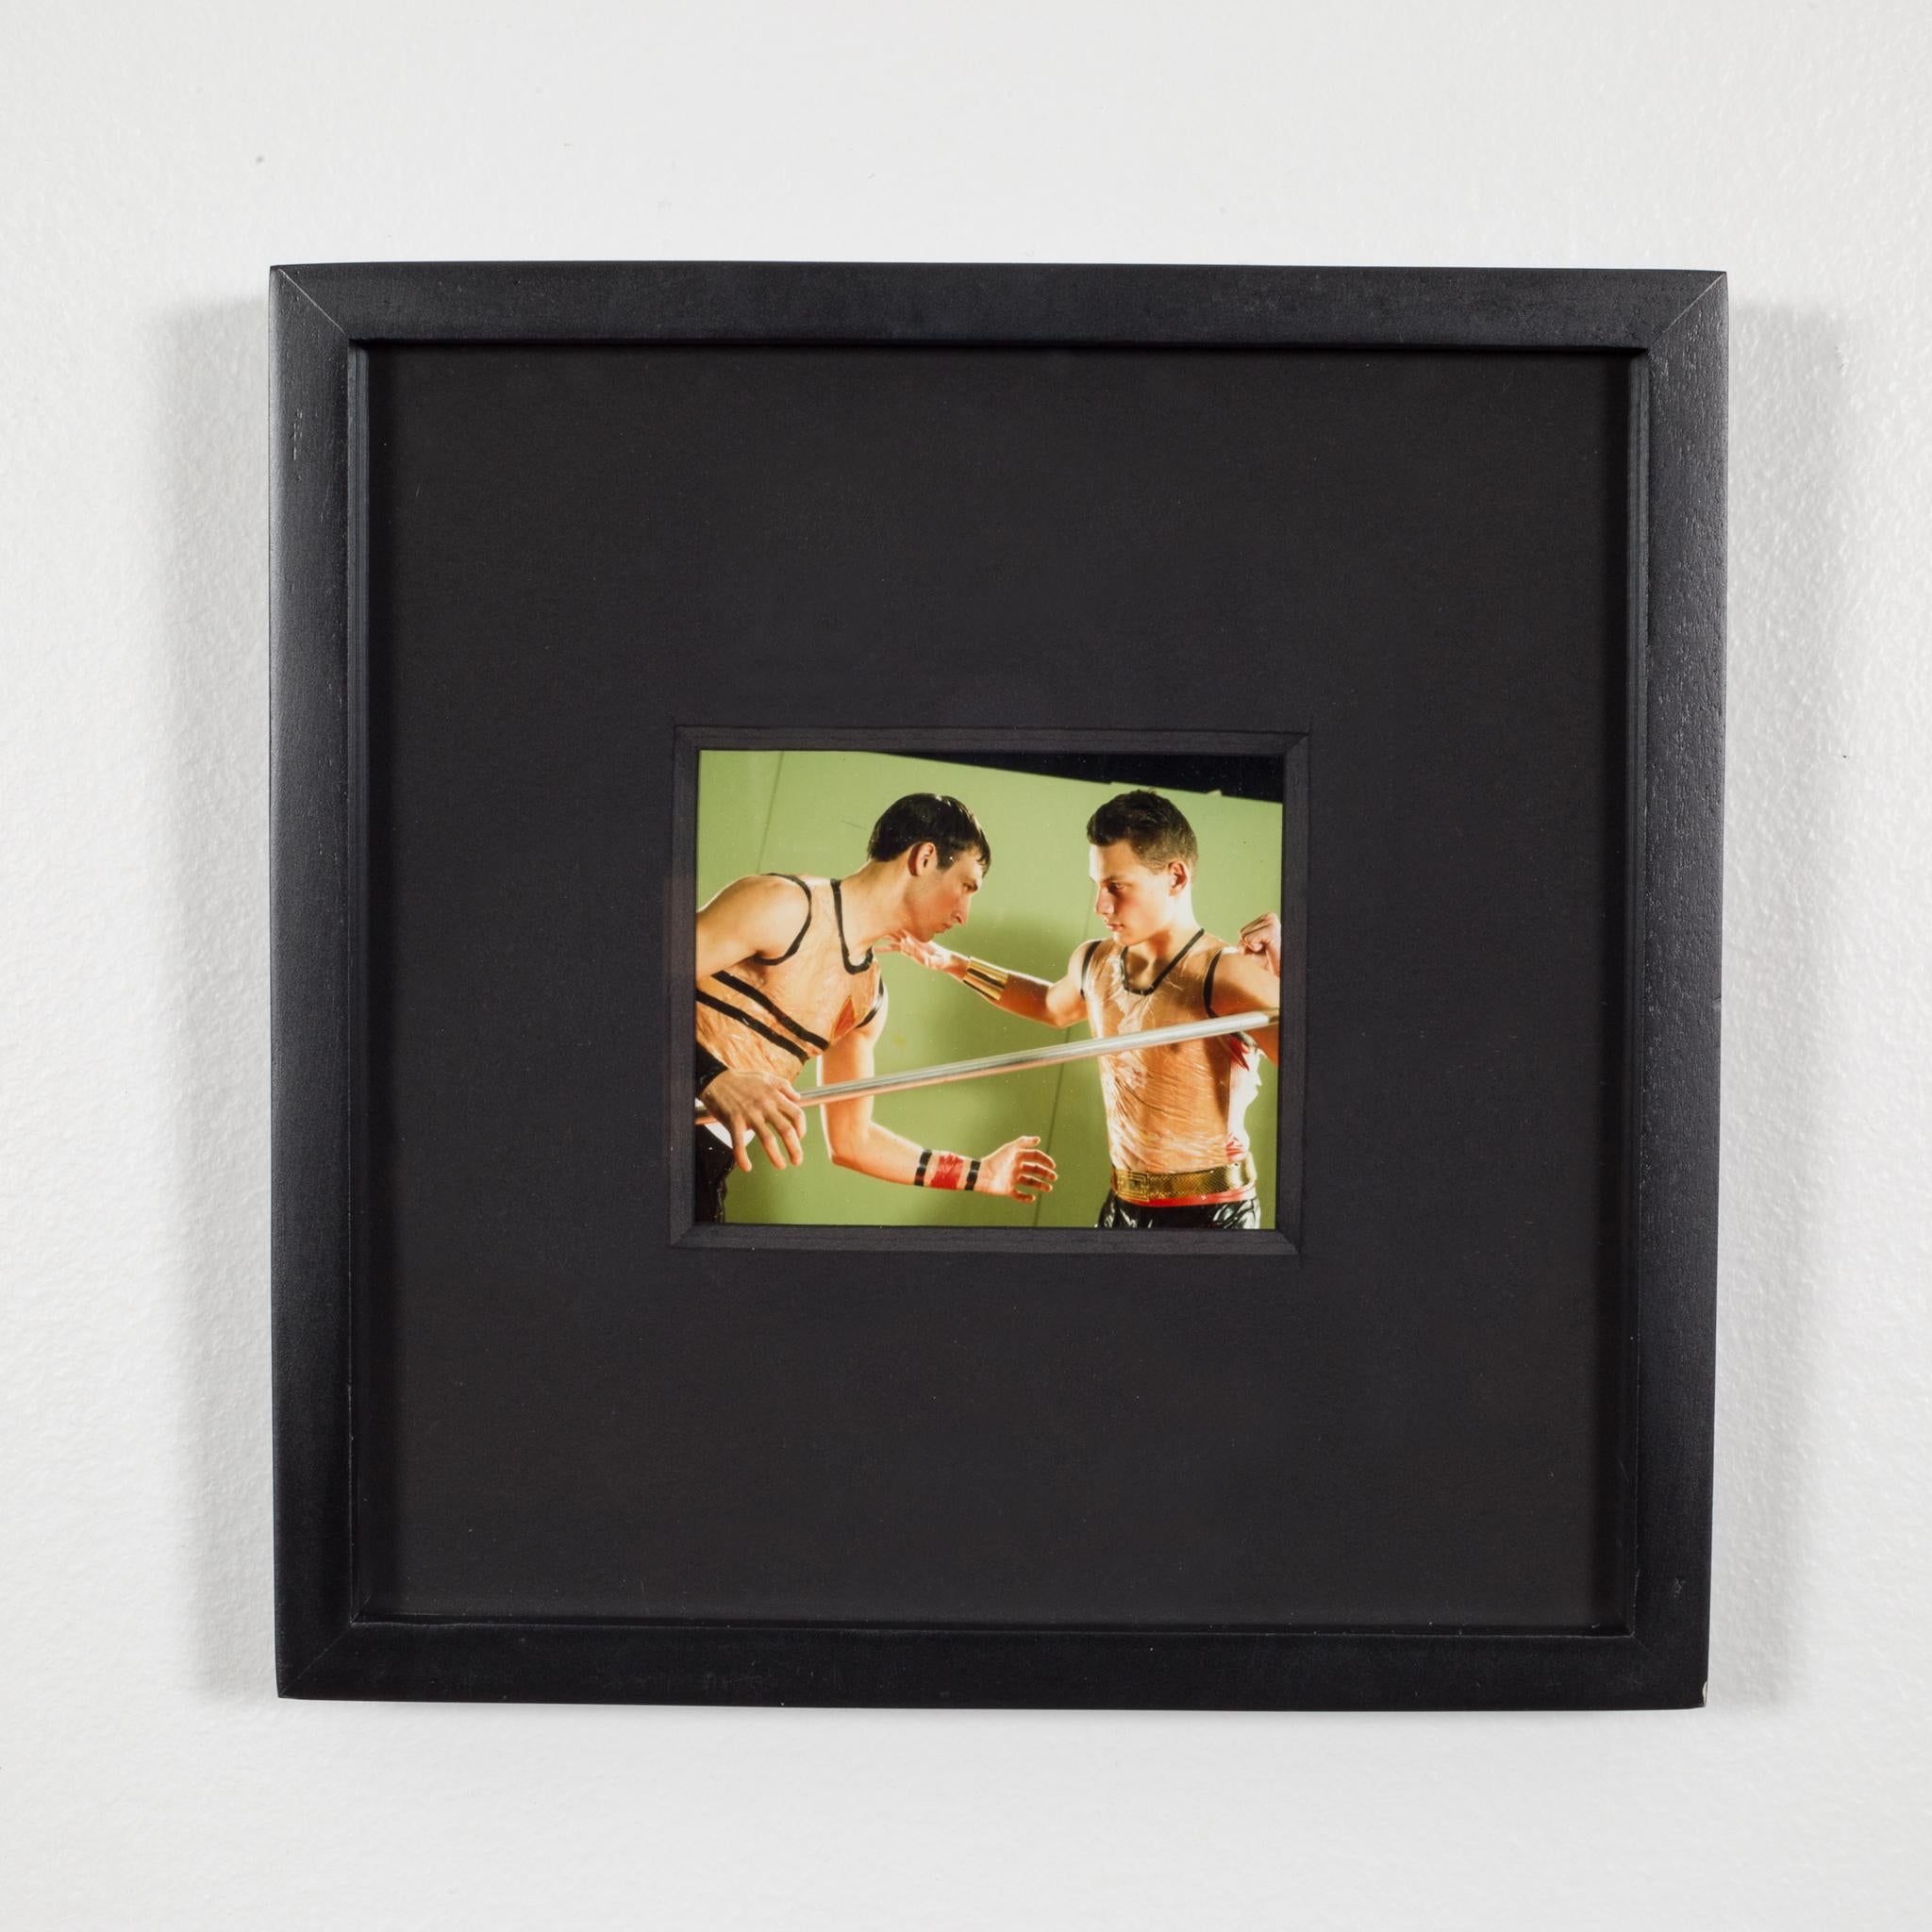 American Polaroid Test Image by Denise Tarantino for Dah Len Studios